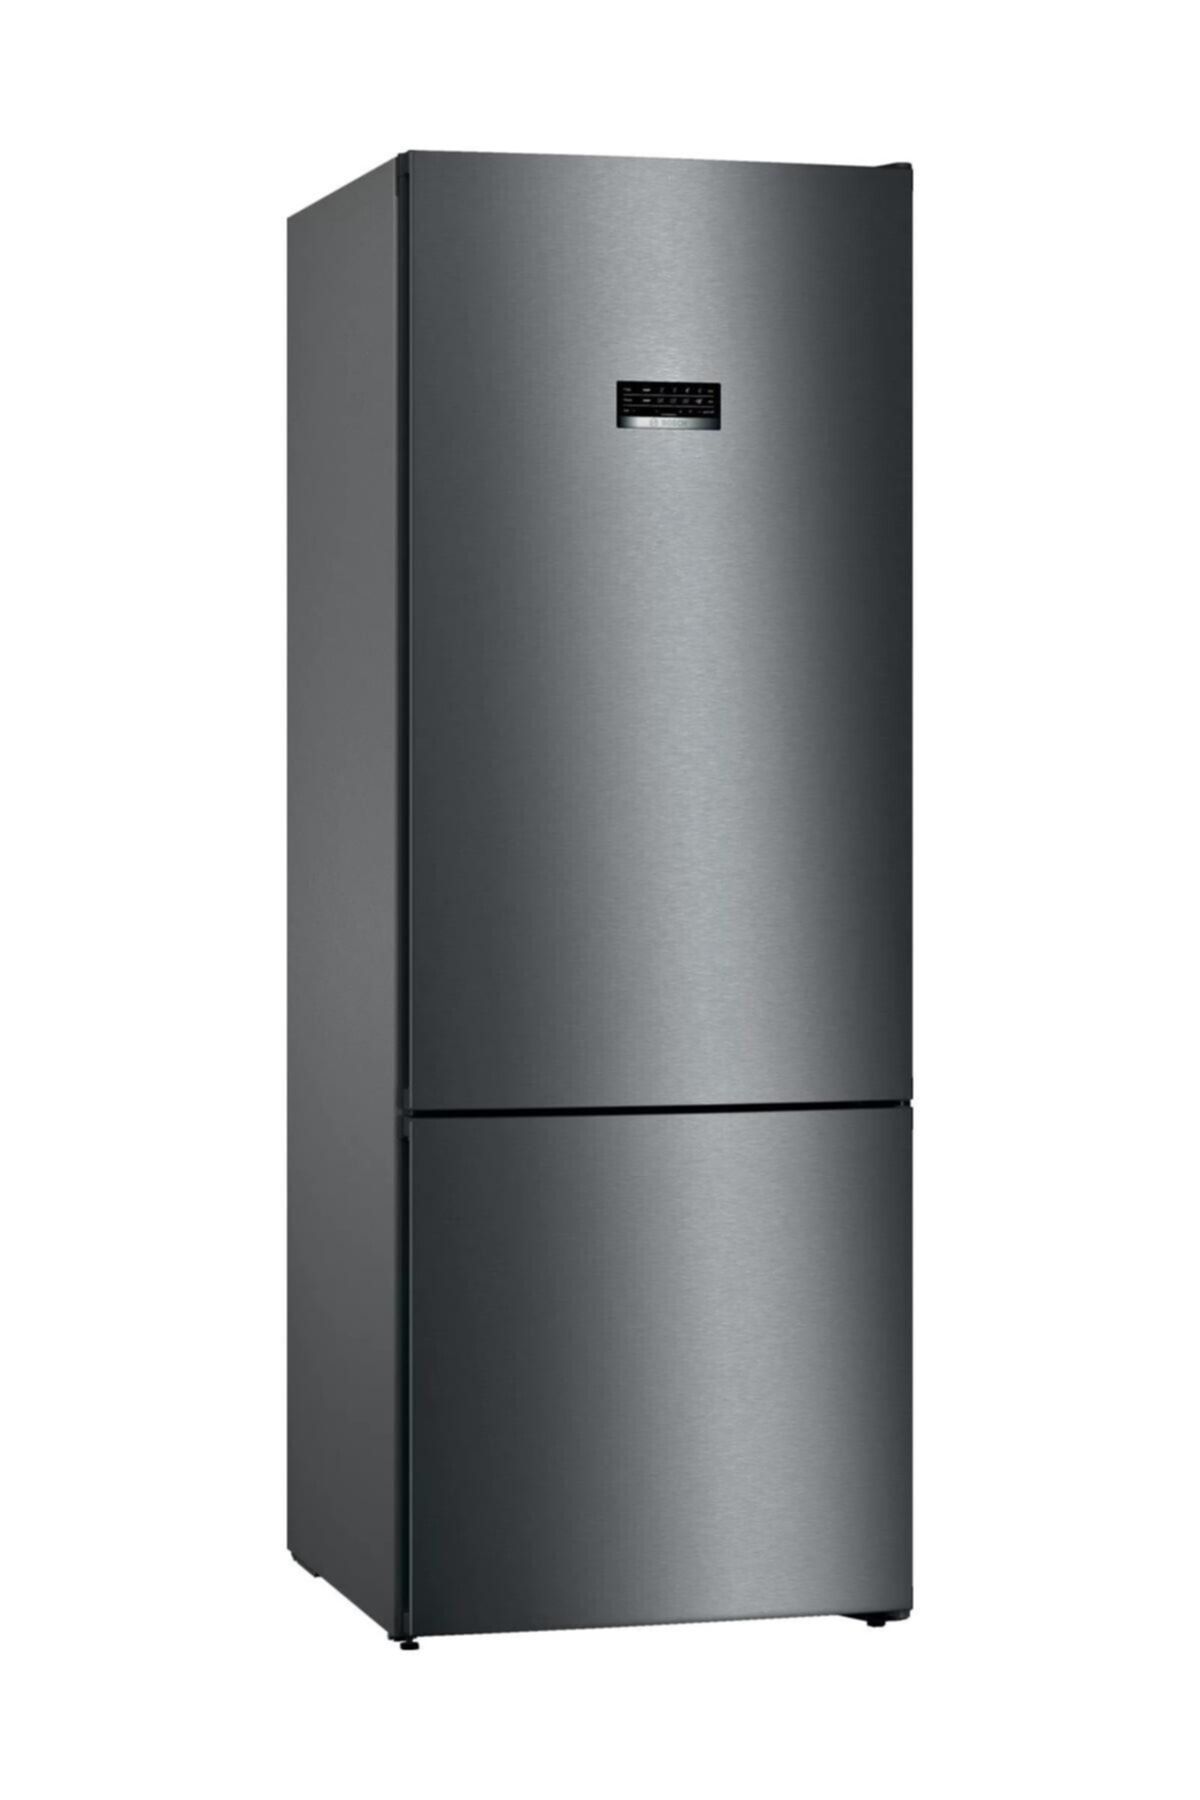 Bosch Kgn56vxf0n F Enerji Kombi Inox Buzdolabı